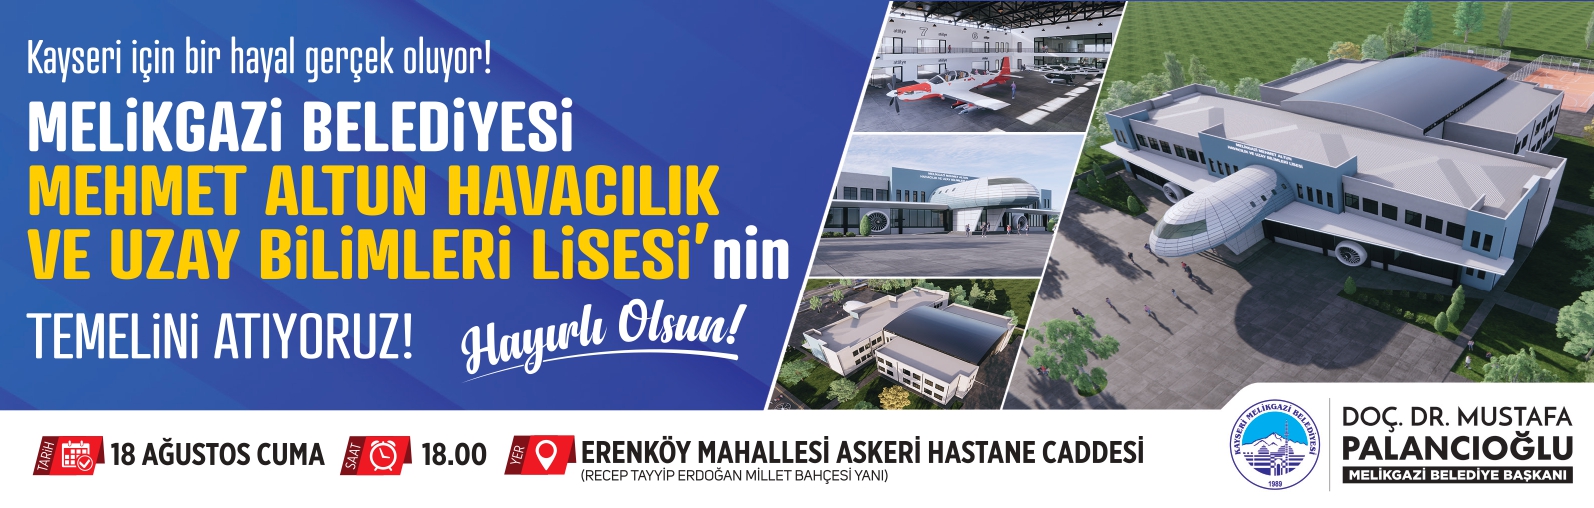 Melikgazi Belediyesi Mehmet Altun havacılık ve uzay bilimleri lisesi